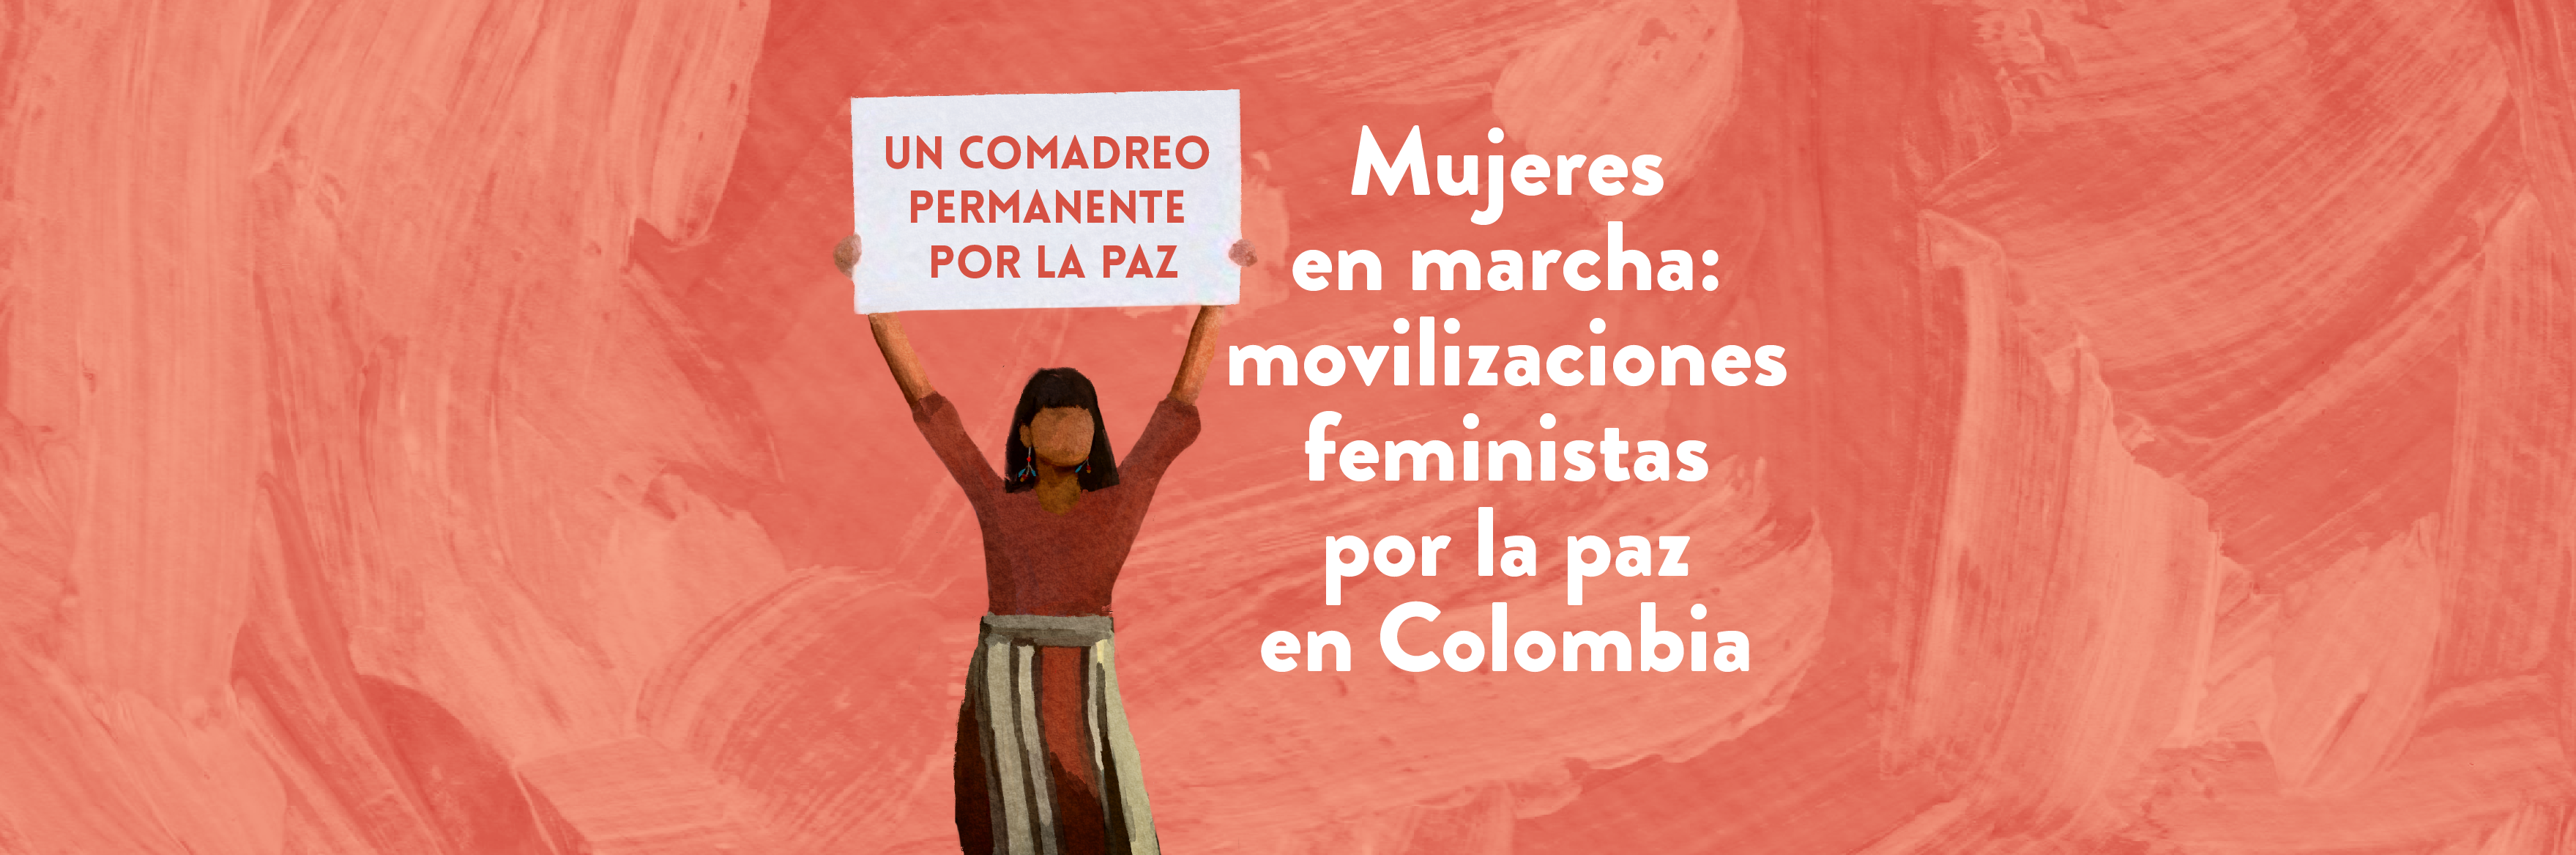 Mujeres en marcha: movilizaciones feministas por la paz en Colombia 